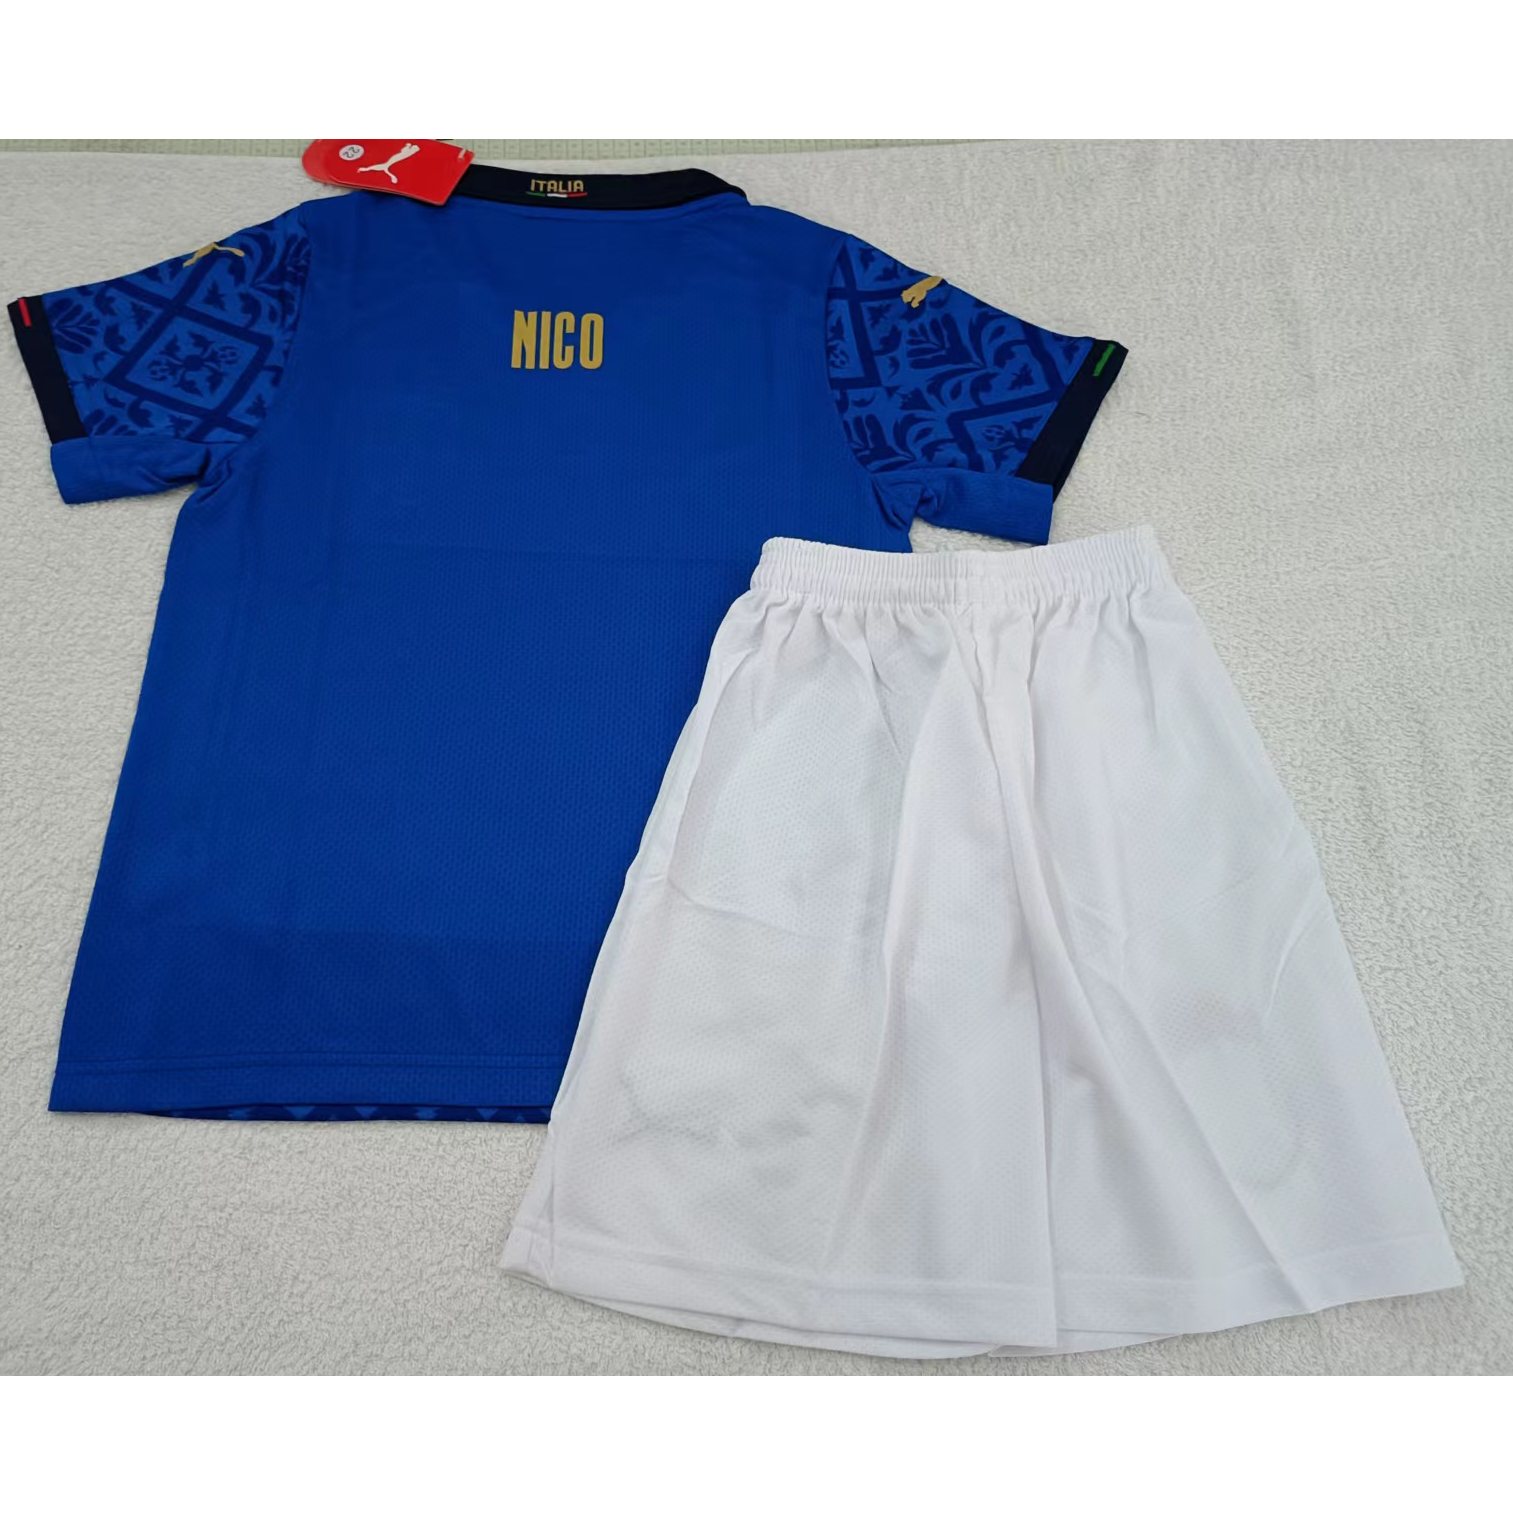 max maillots produits à prix réduits 2302136 Enfant Italie NICO Taille 22 Bleu